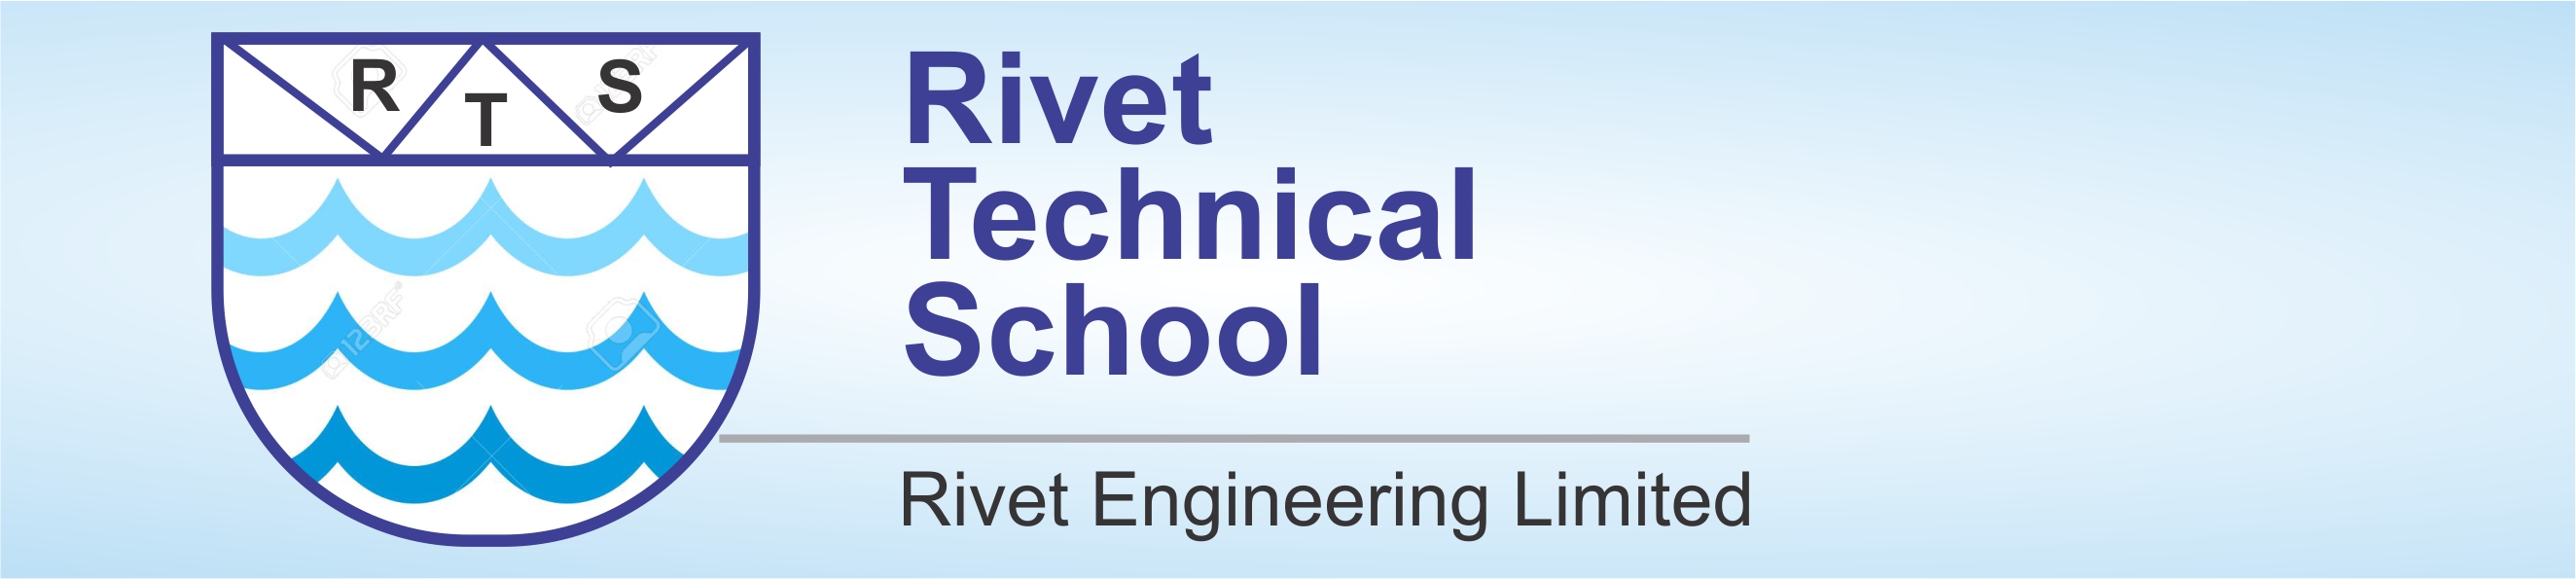 rivet school